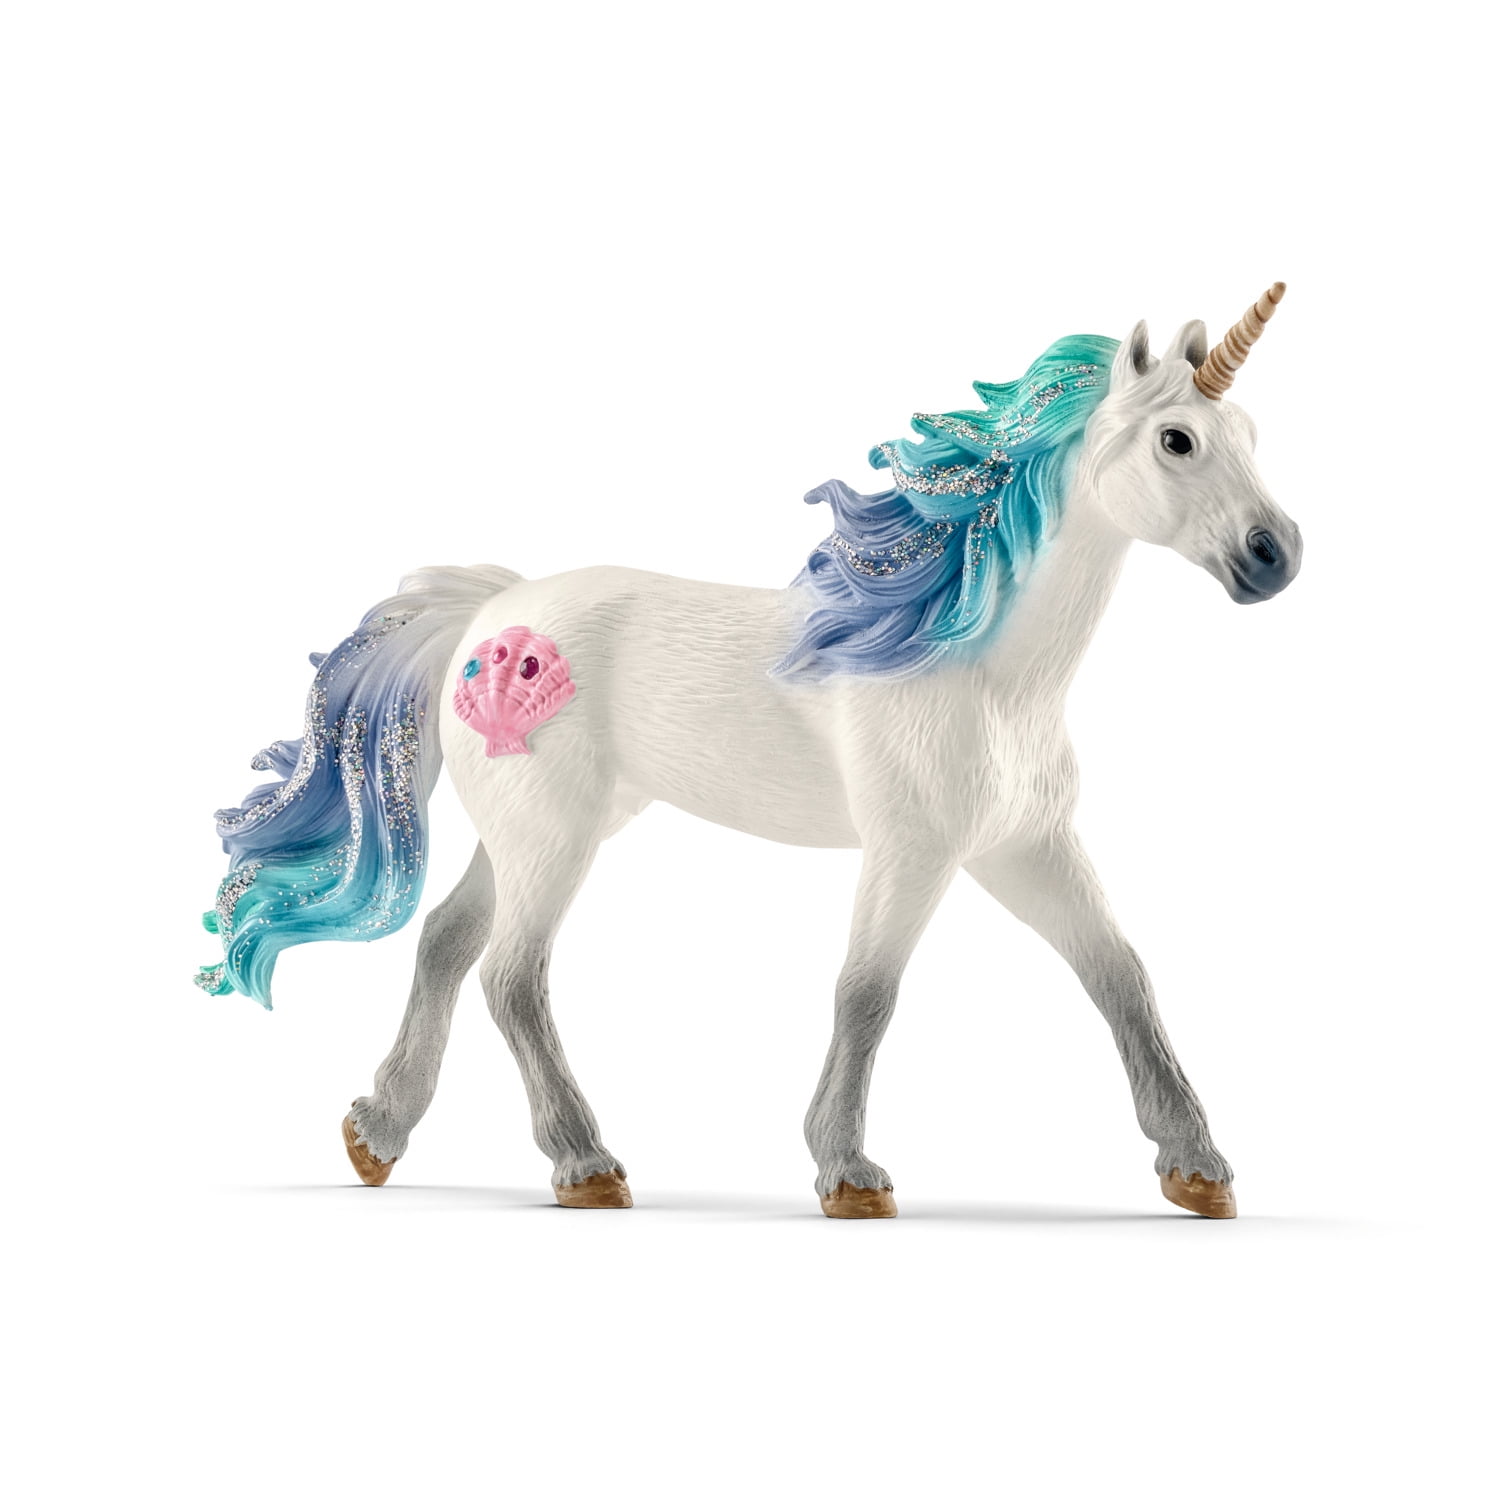 Schleich Bayala décoré Unicorn Pegasus poulain collection FANTASY FIGURE 